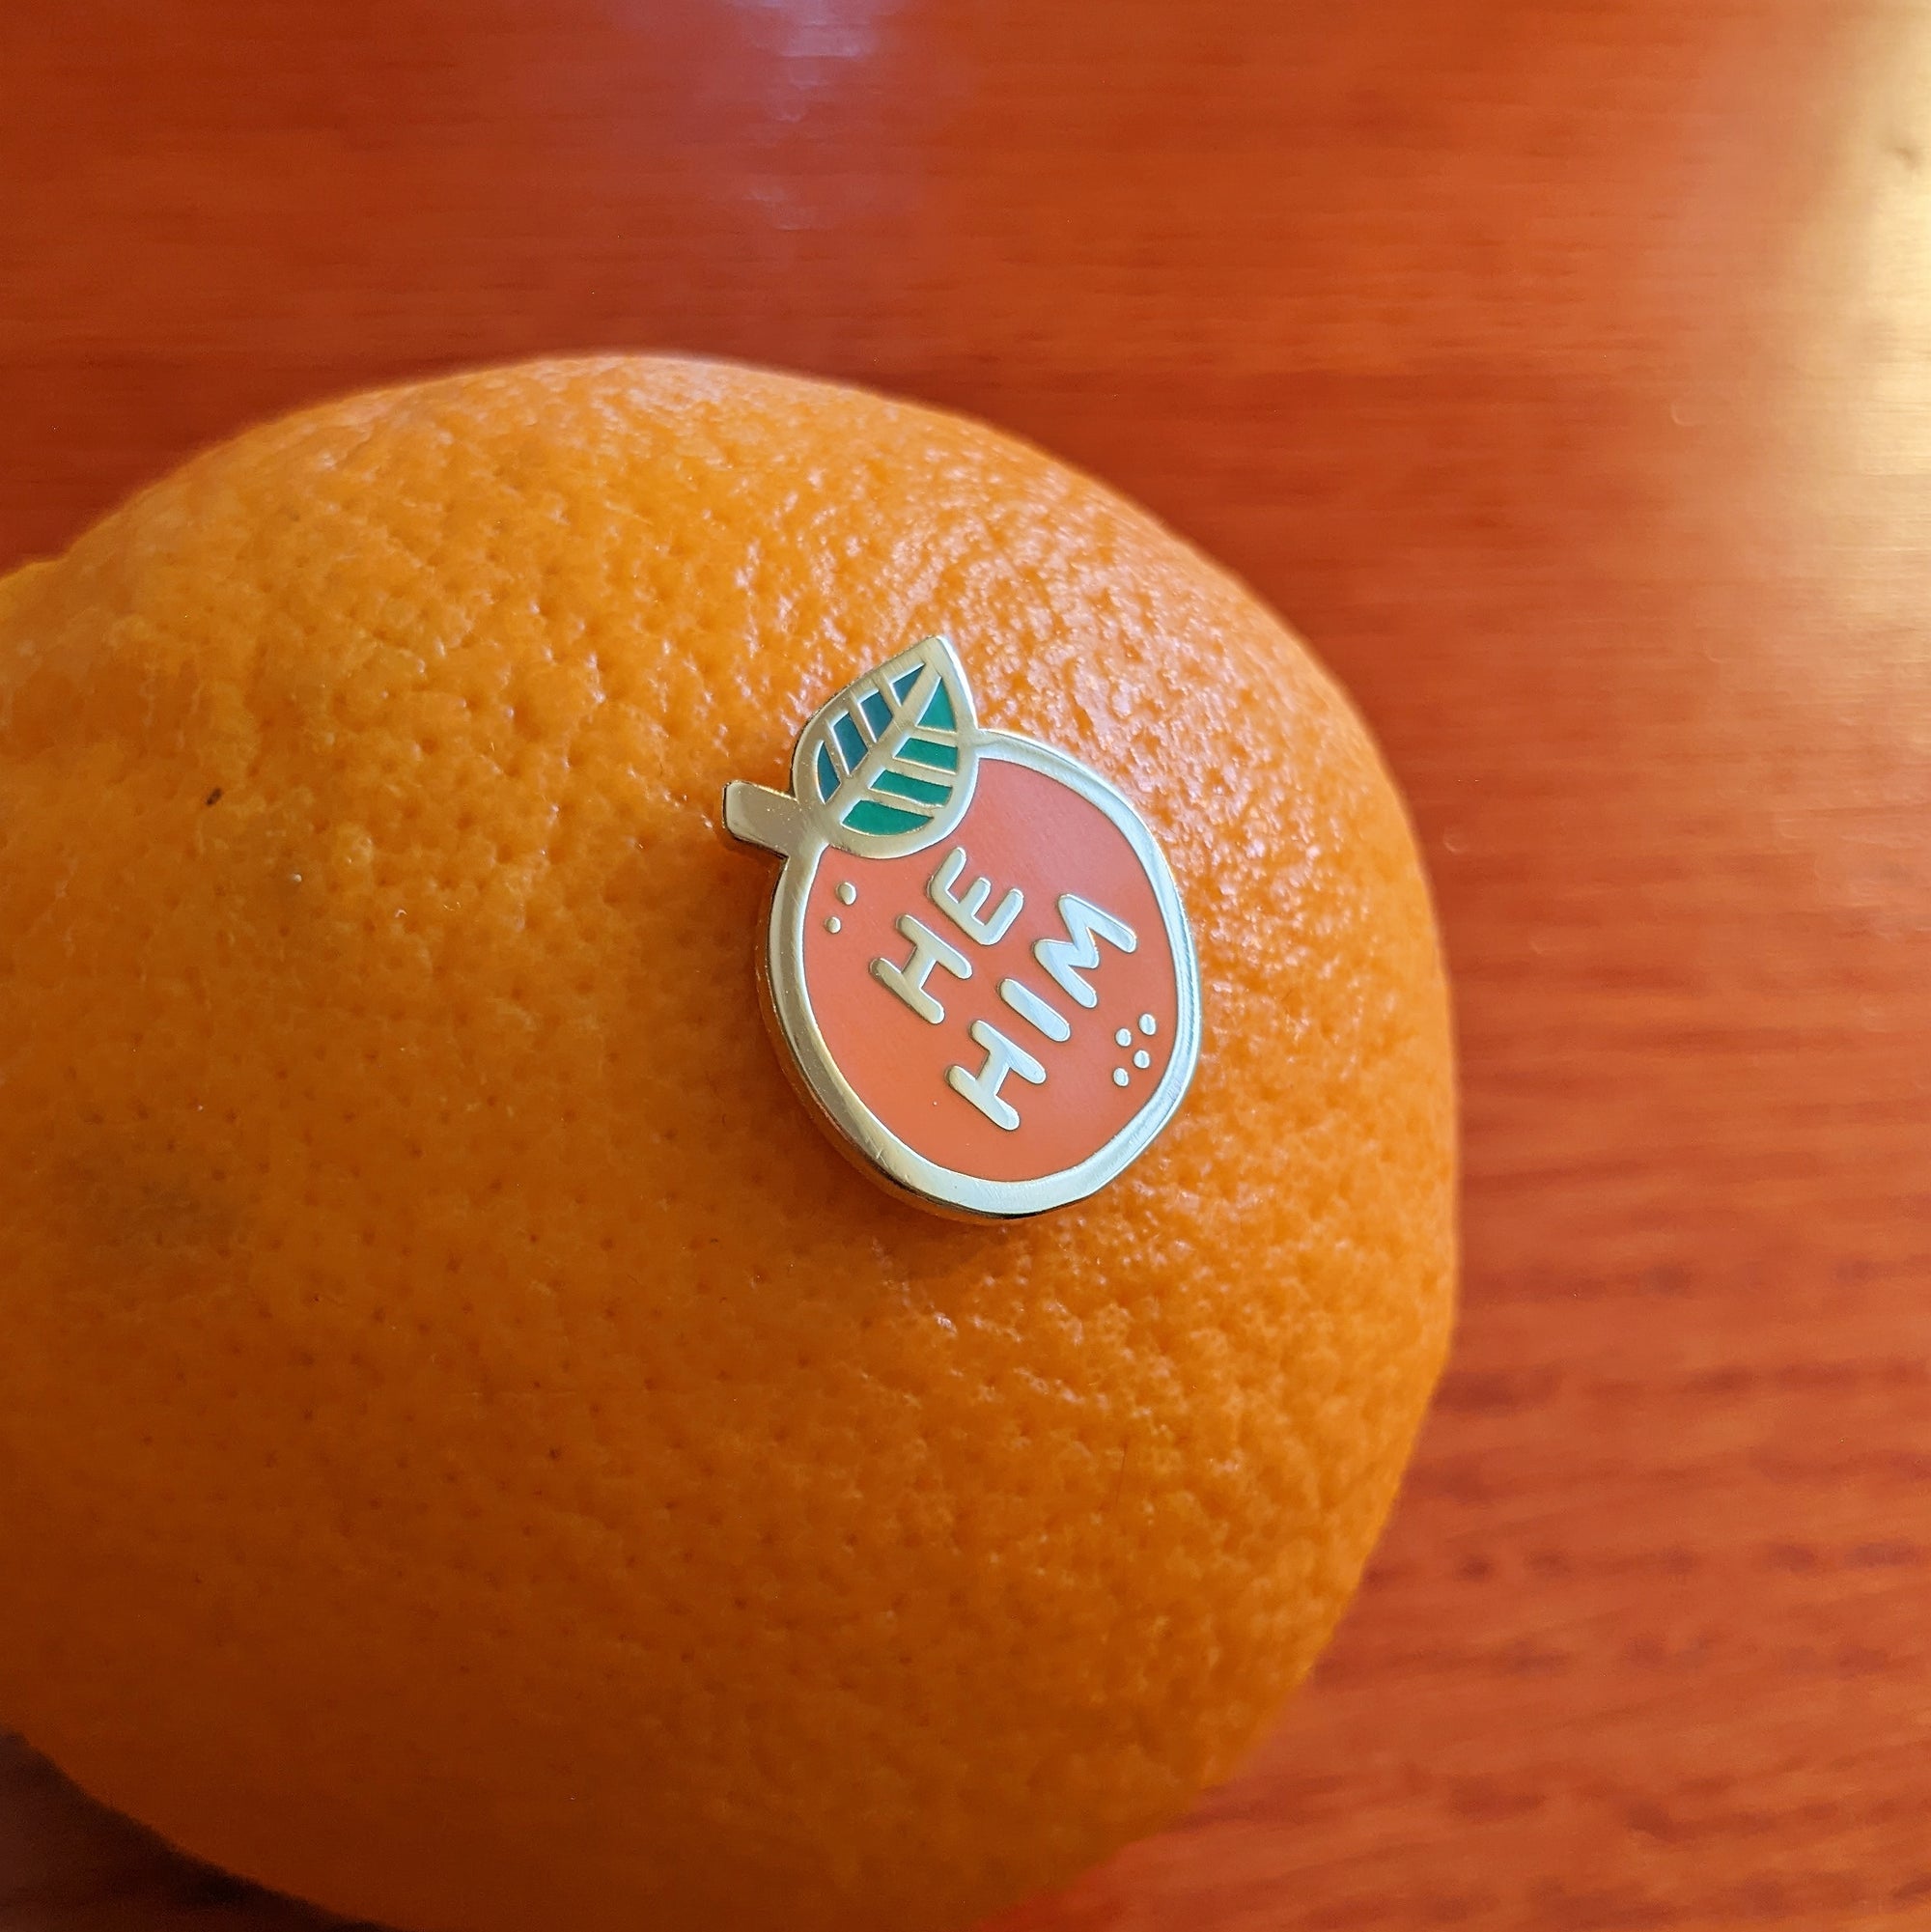 Pronoun Orange Pin - he/him